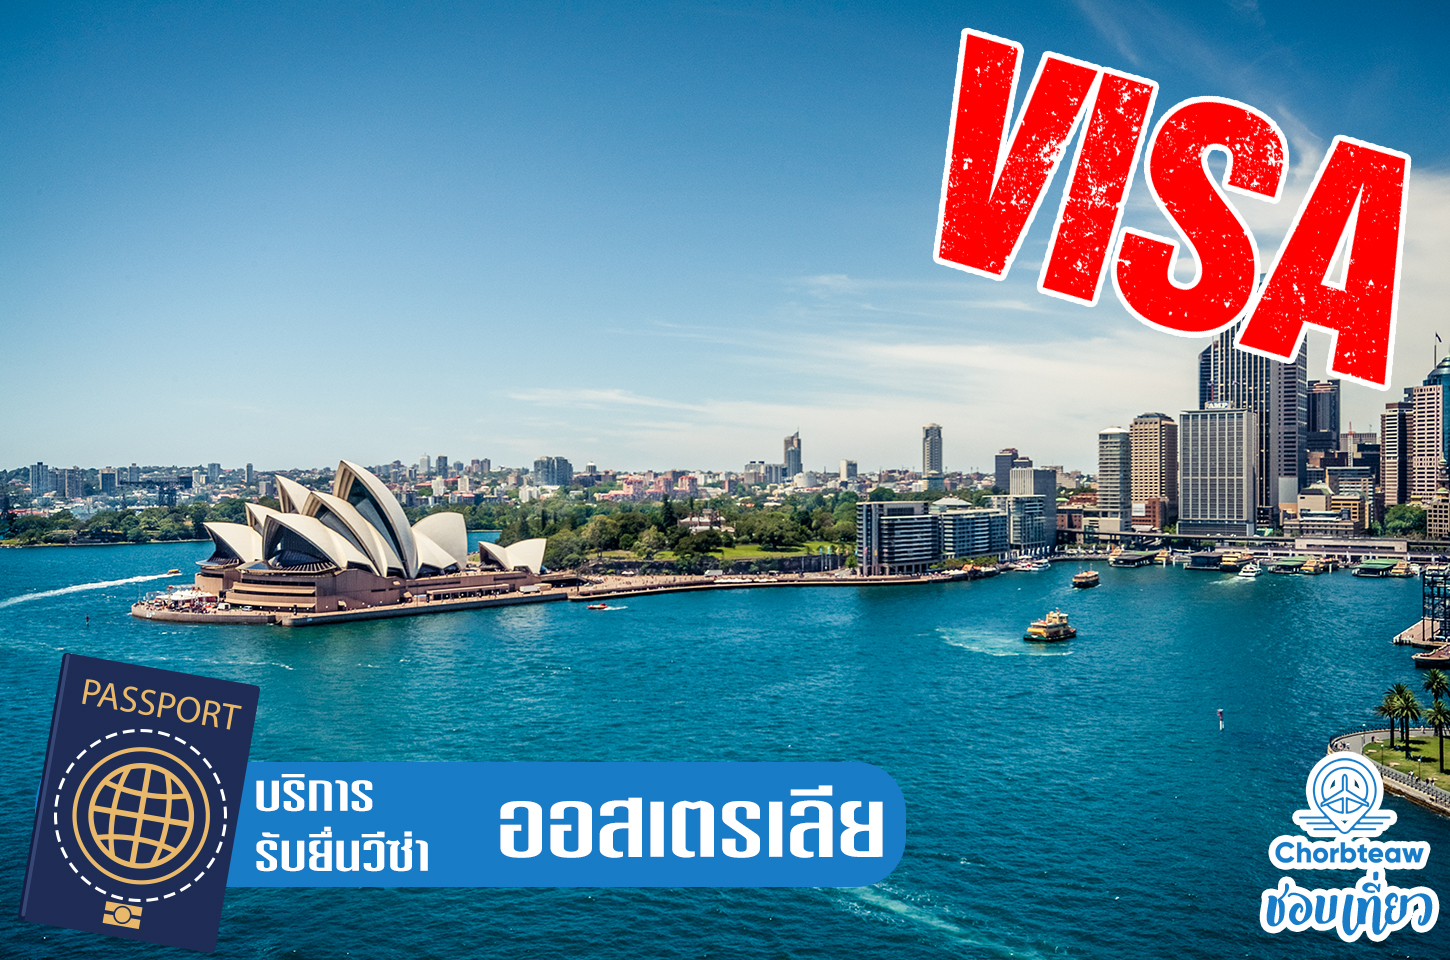 บริการยื่นวีซ่าออสเตรเลีย Australia Visa เราบริการรวดเร็ว ทันใจ ราคาย่อมเยาว์